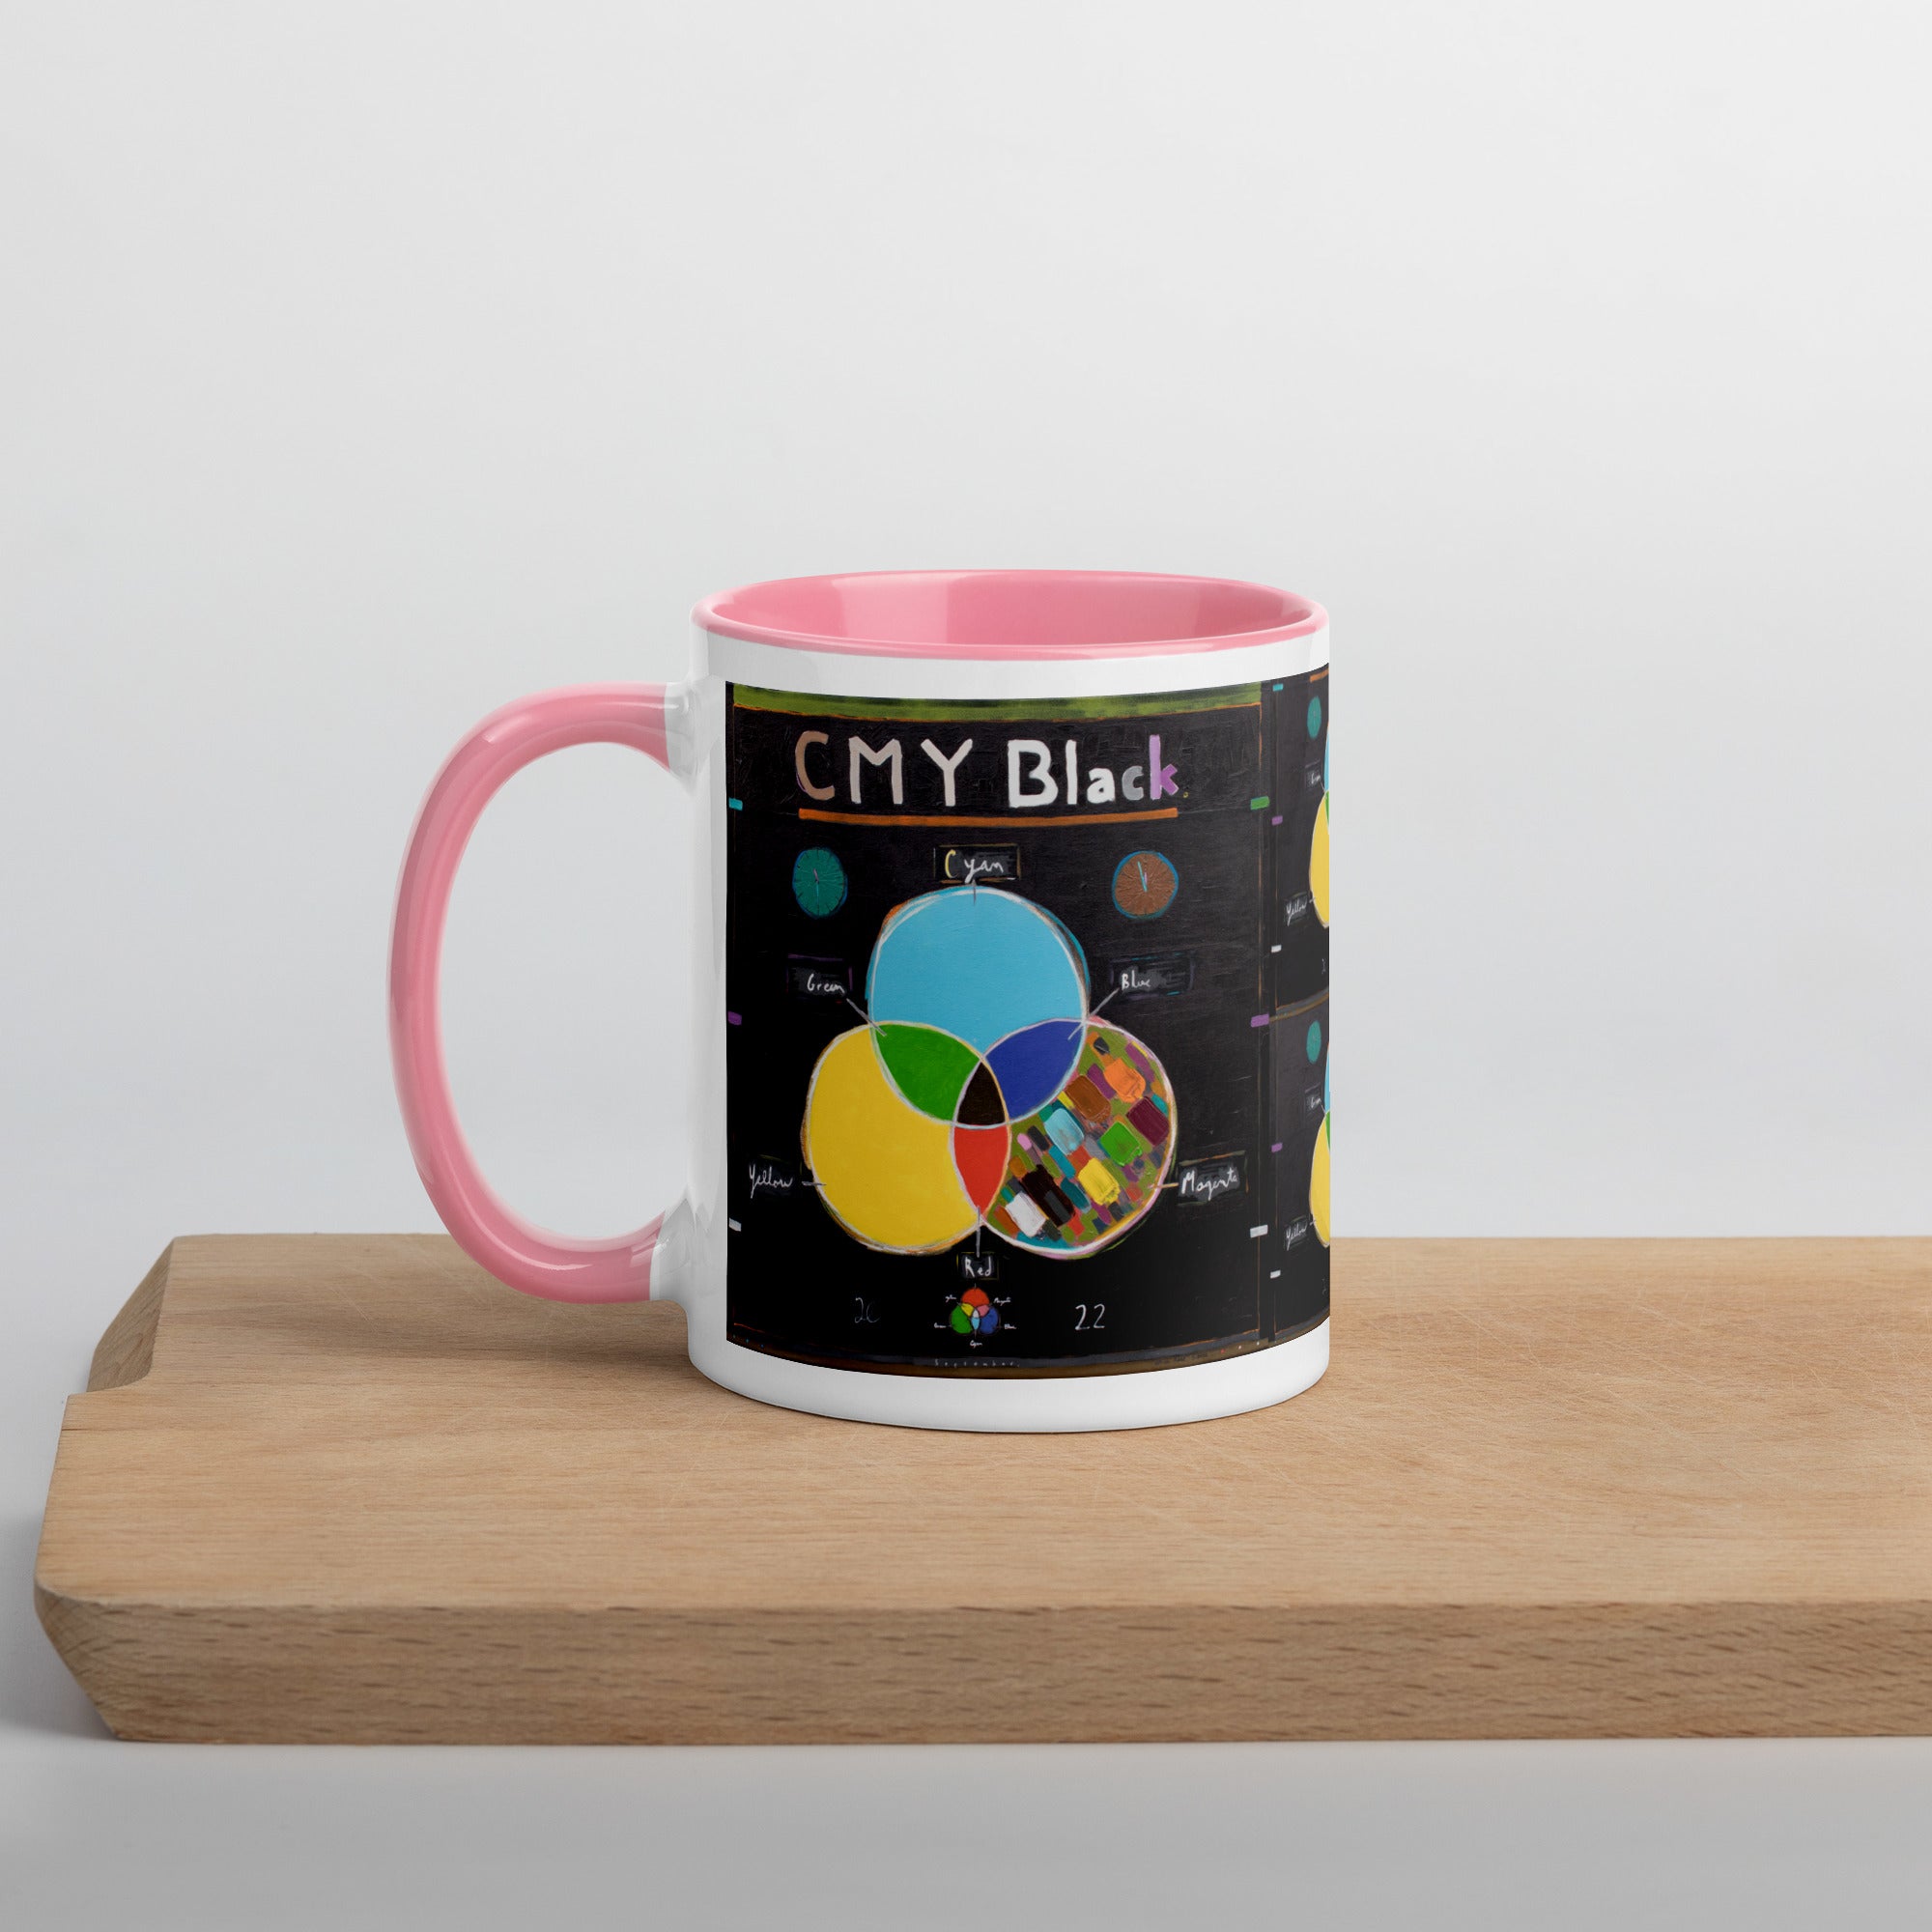 CMY Black [mug with color inside]